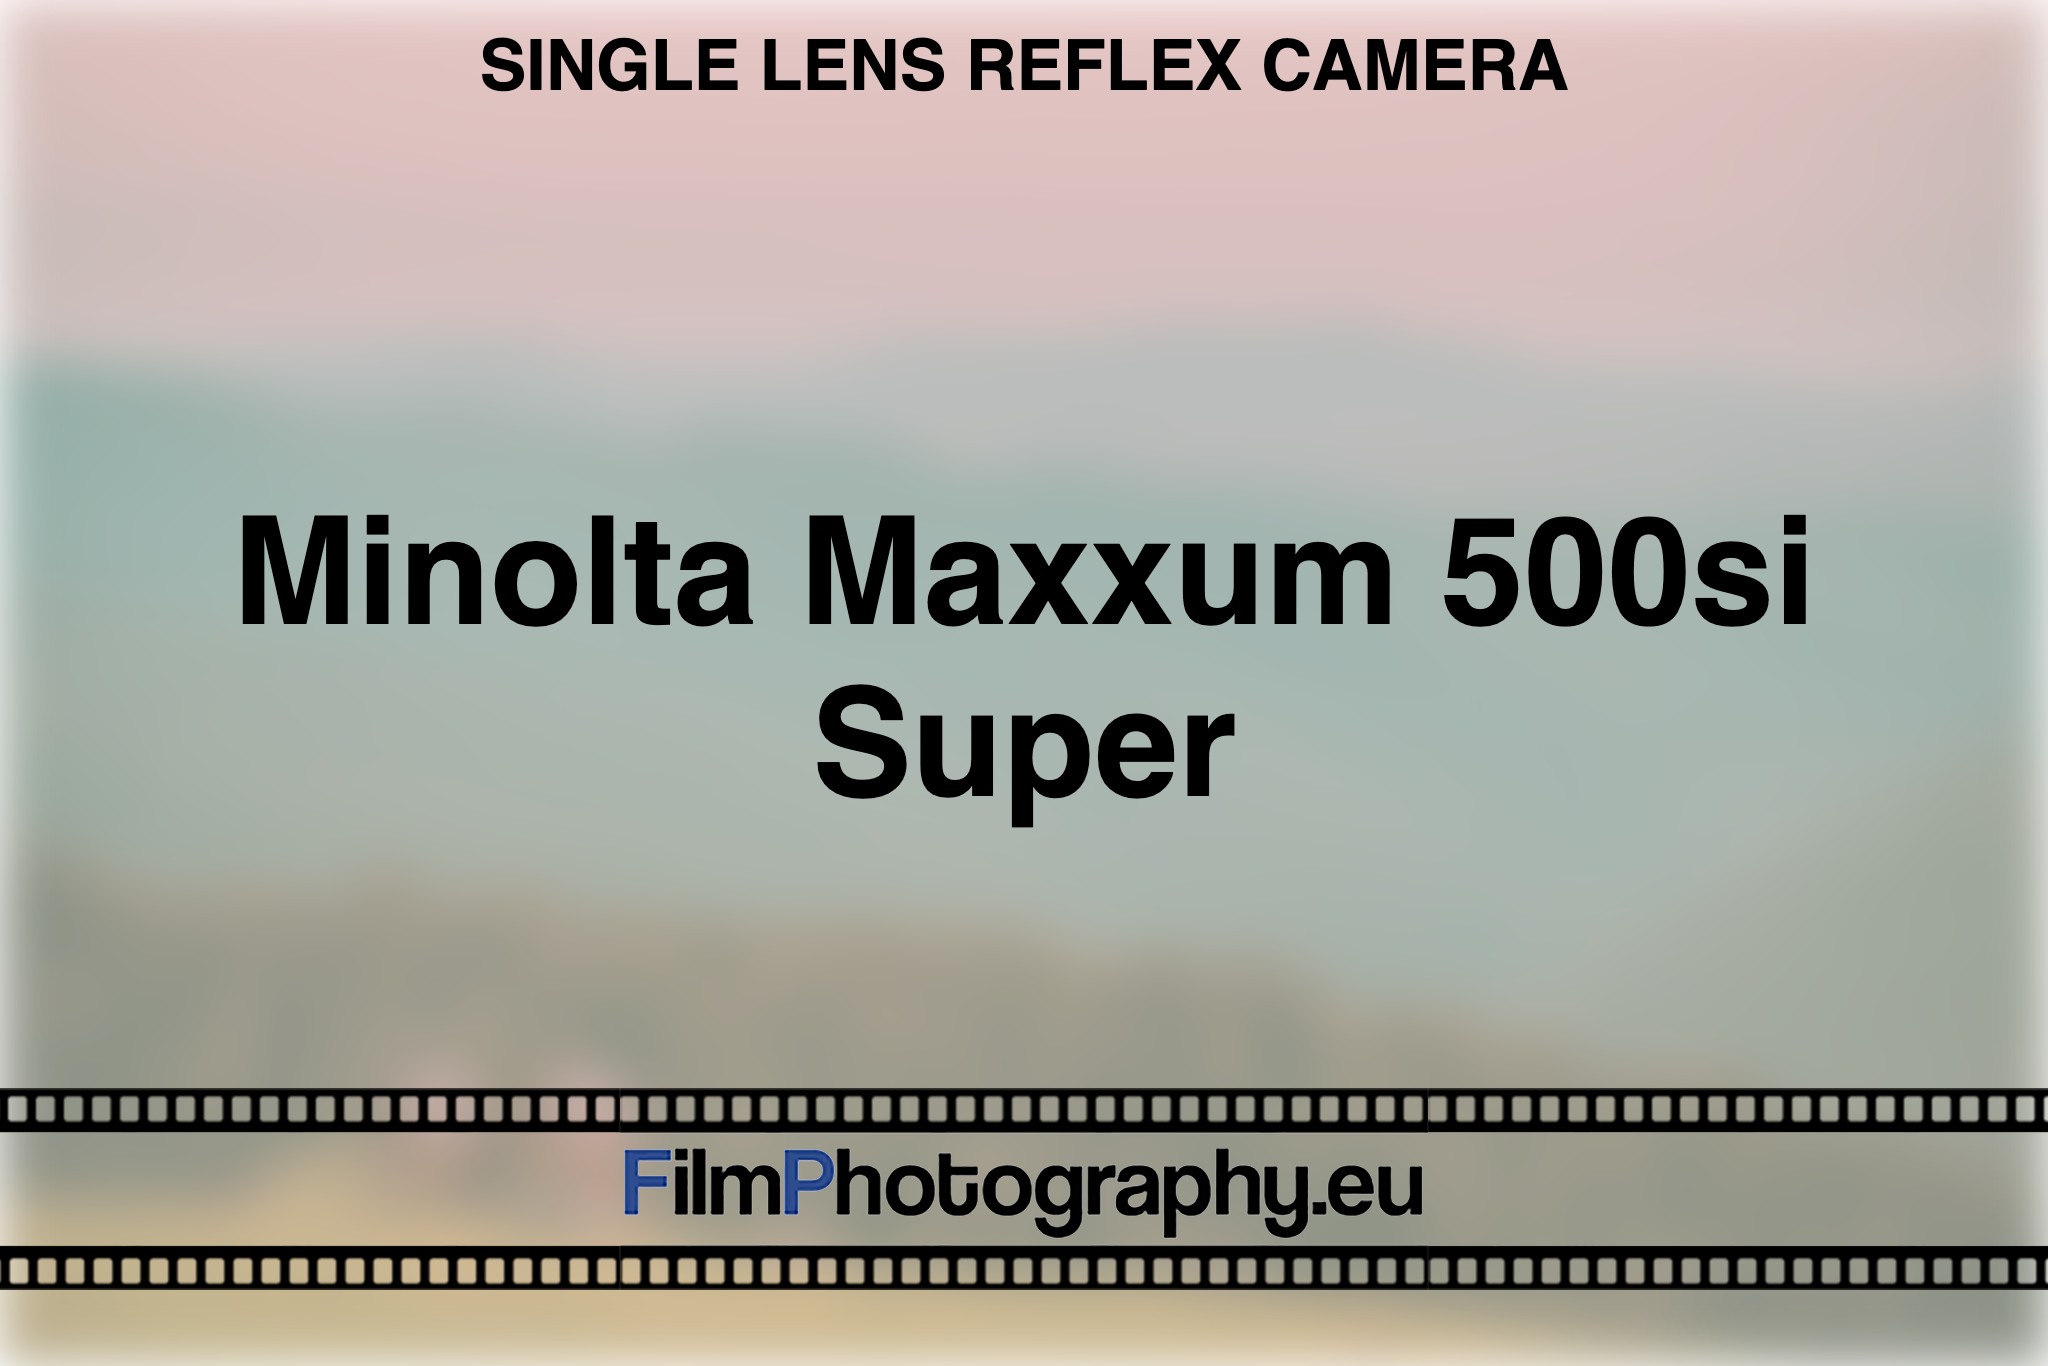 minolta-maxxum-500si-super-single-lens-reflex-camera-bnv